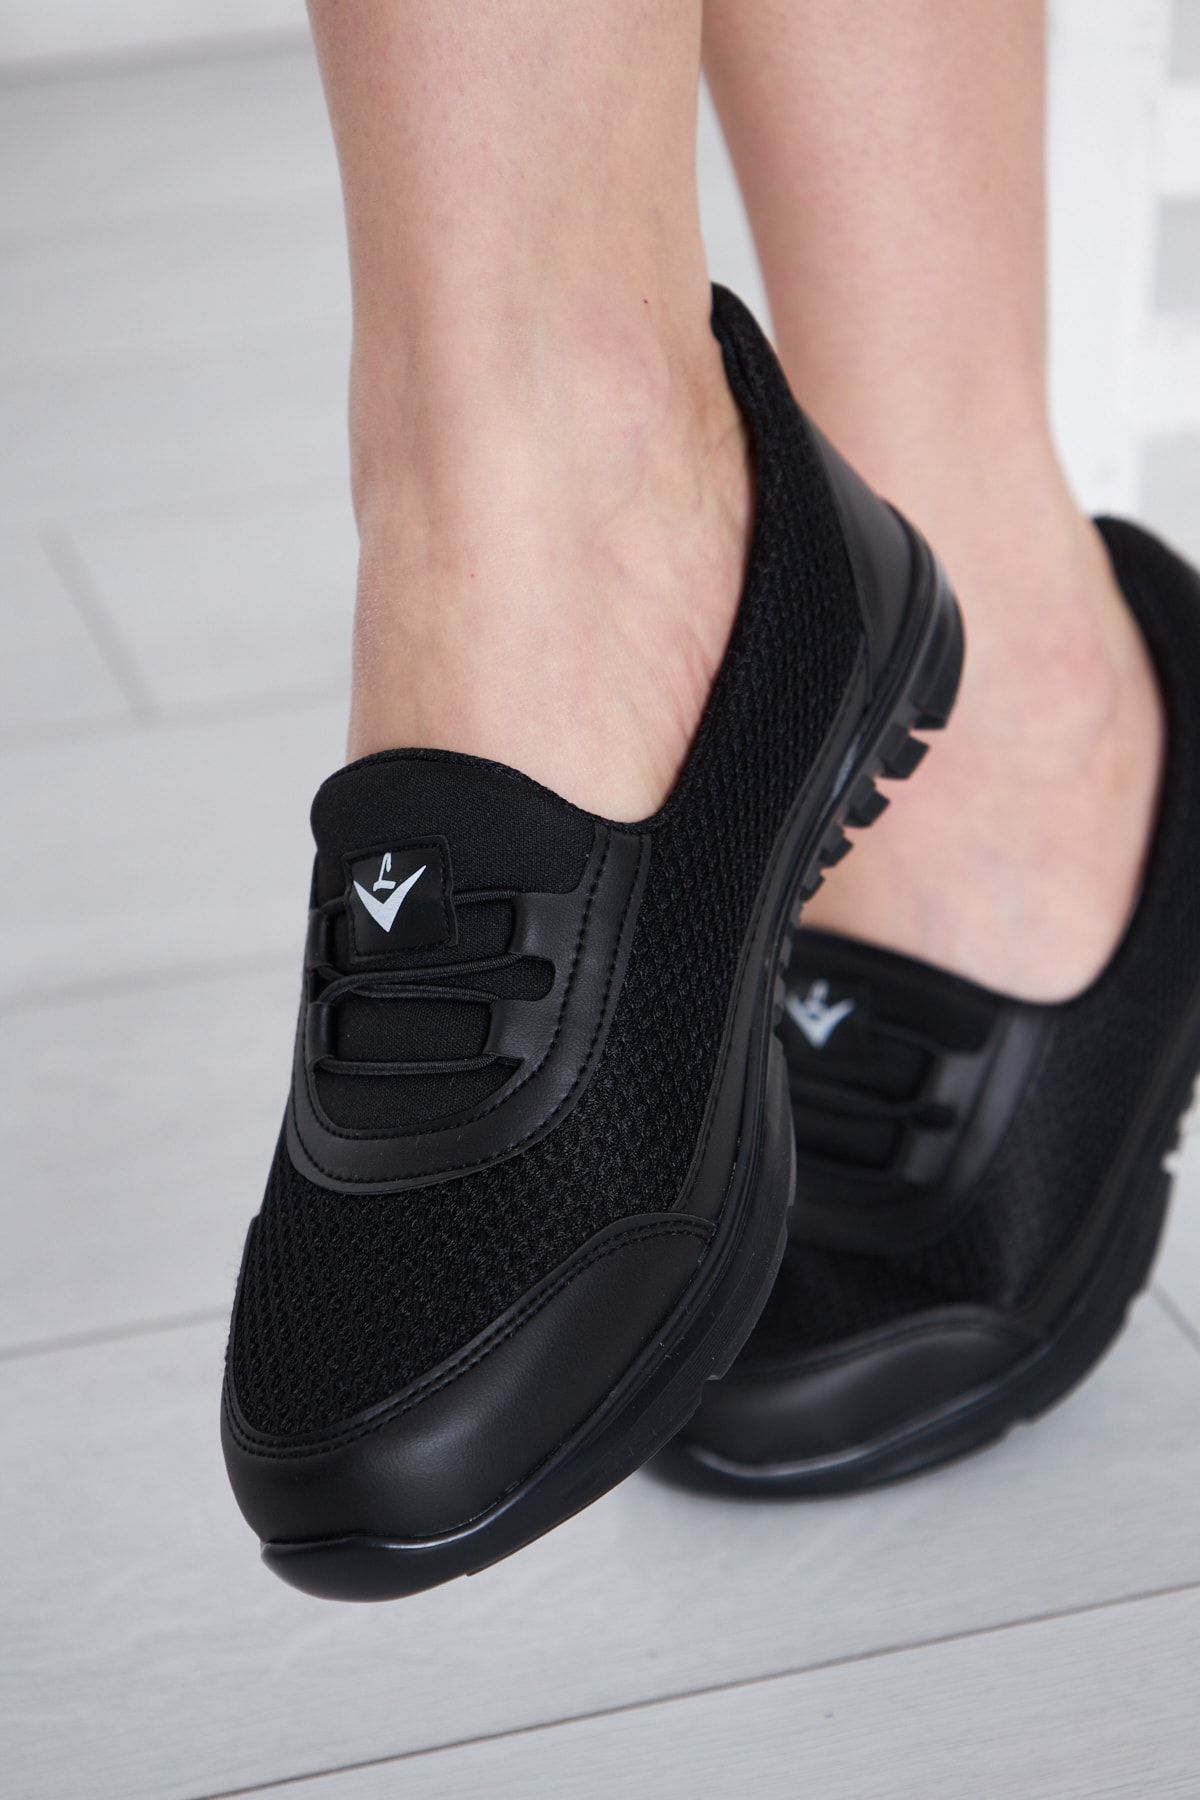 ALTUNTAŞ Tam Ortopedik Spor Ayakkabı Anne Ayakkabı Günlük Ayakkabı Klasik Ayakkabı Kadın Babet